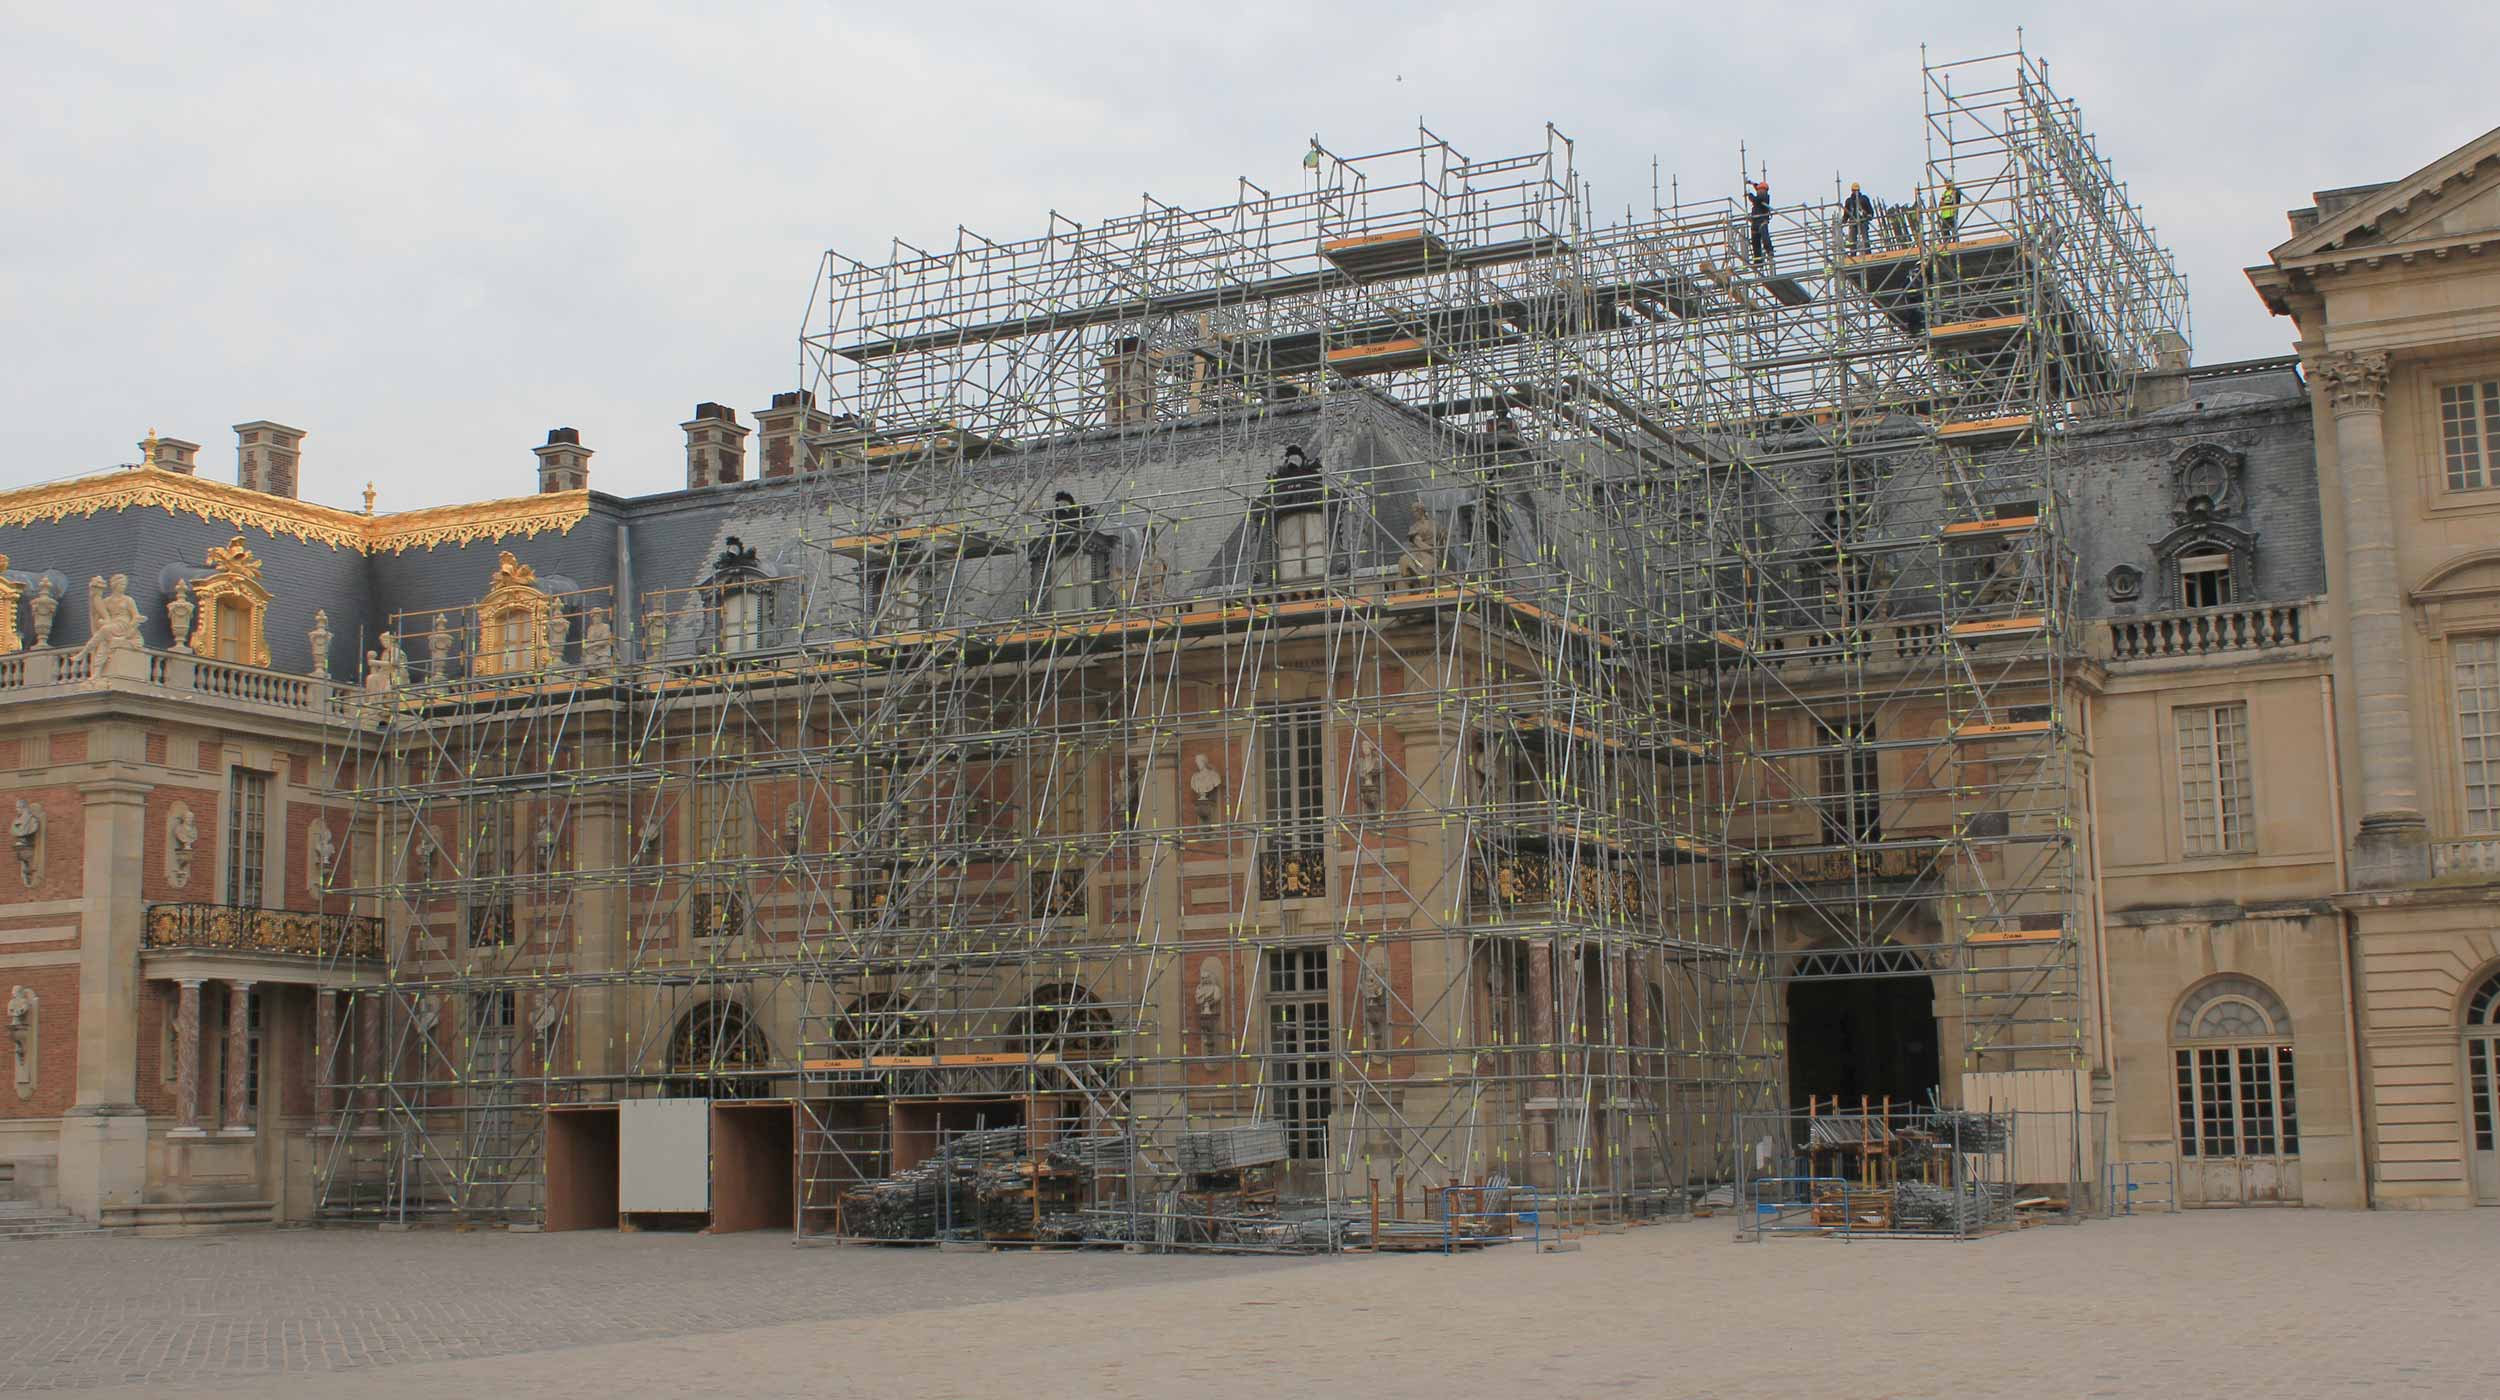 Rezidence francouzské monarchie a seznamu světového dědictví UNESCO, její obnova se povedla díky systému lešení, kde mohlo pracovat hodně různých pracovníků.